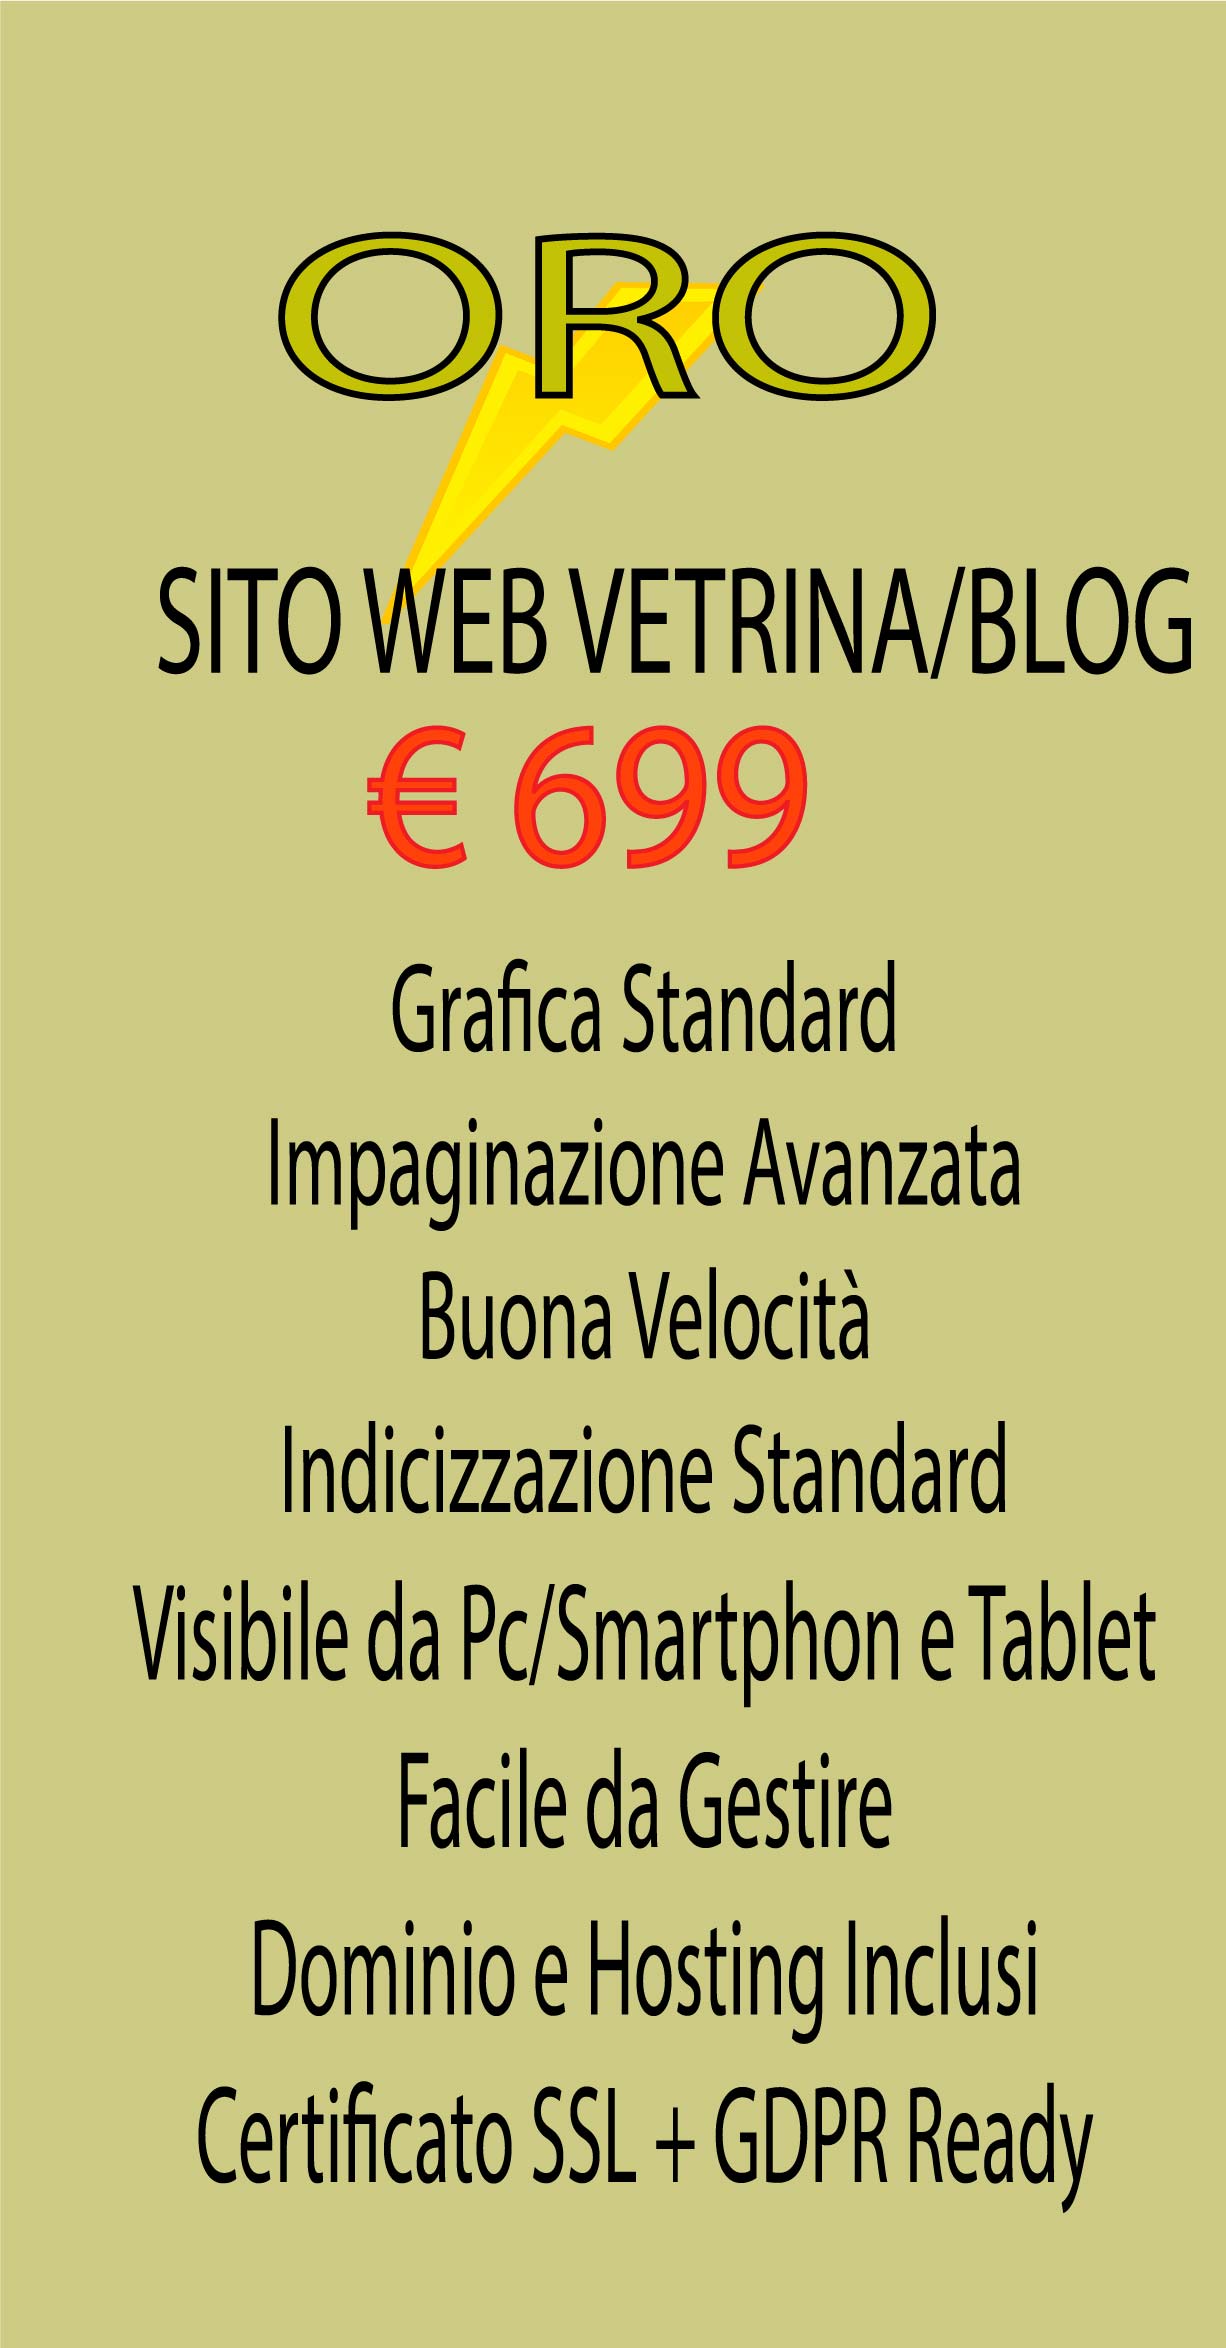 SITO WEB VETRINA/BLOG-ORO